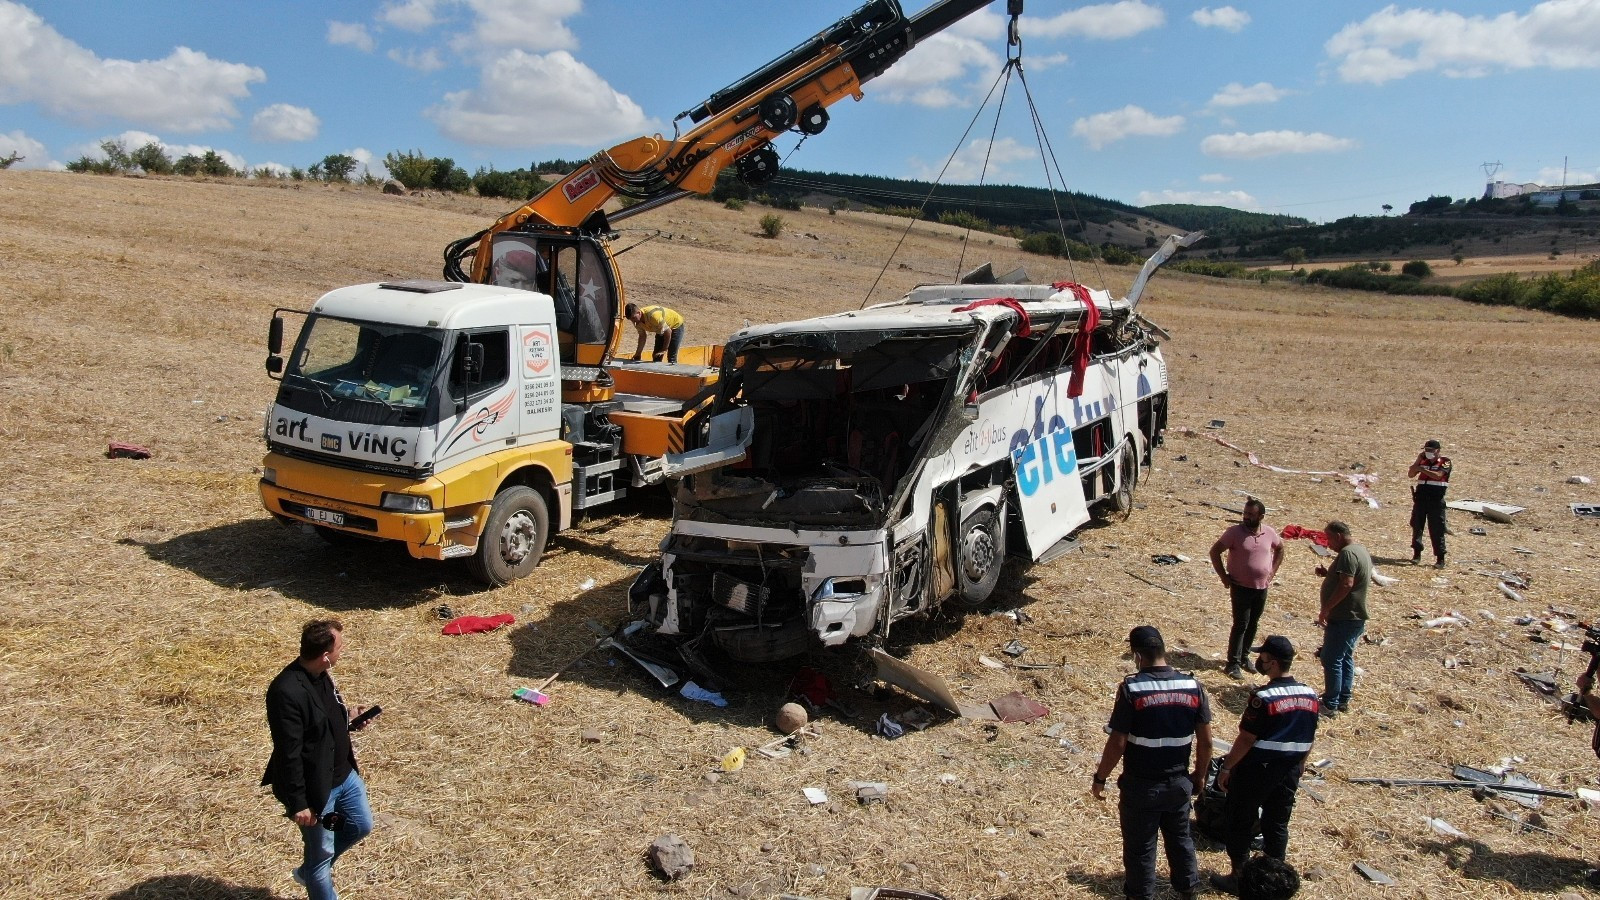 Balıkesir'deki kazada 15 kişi hayatını kaybetti 17 kişi ise yaralandı.